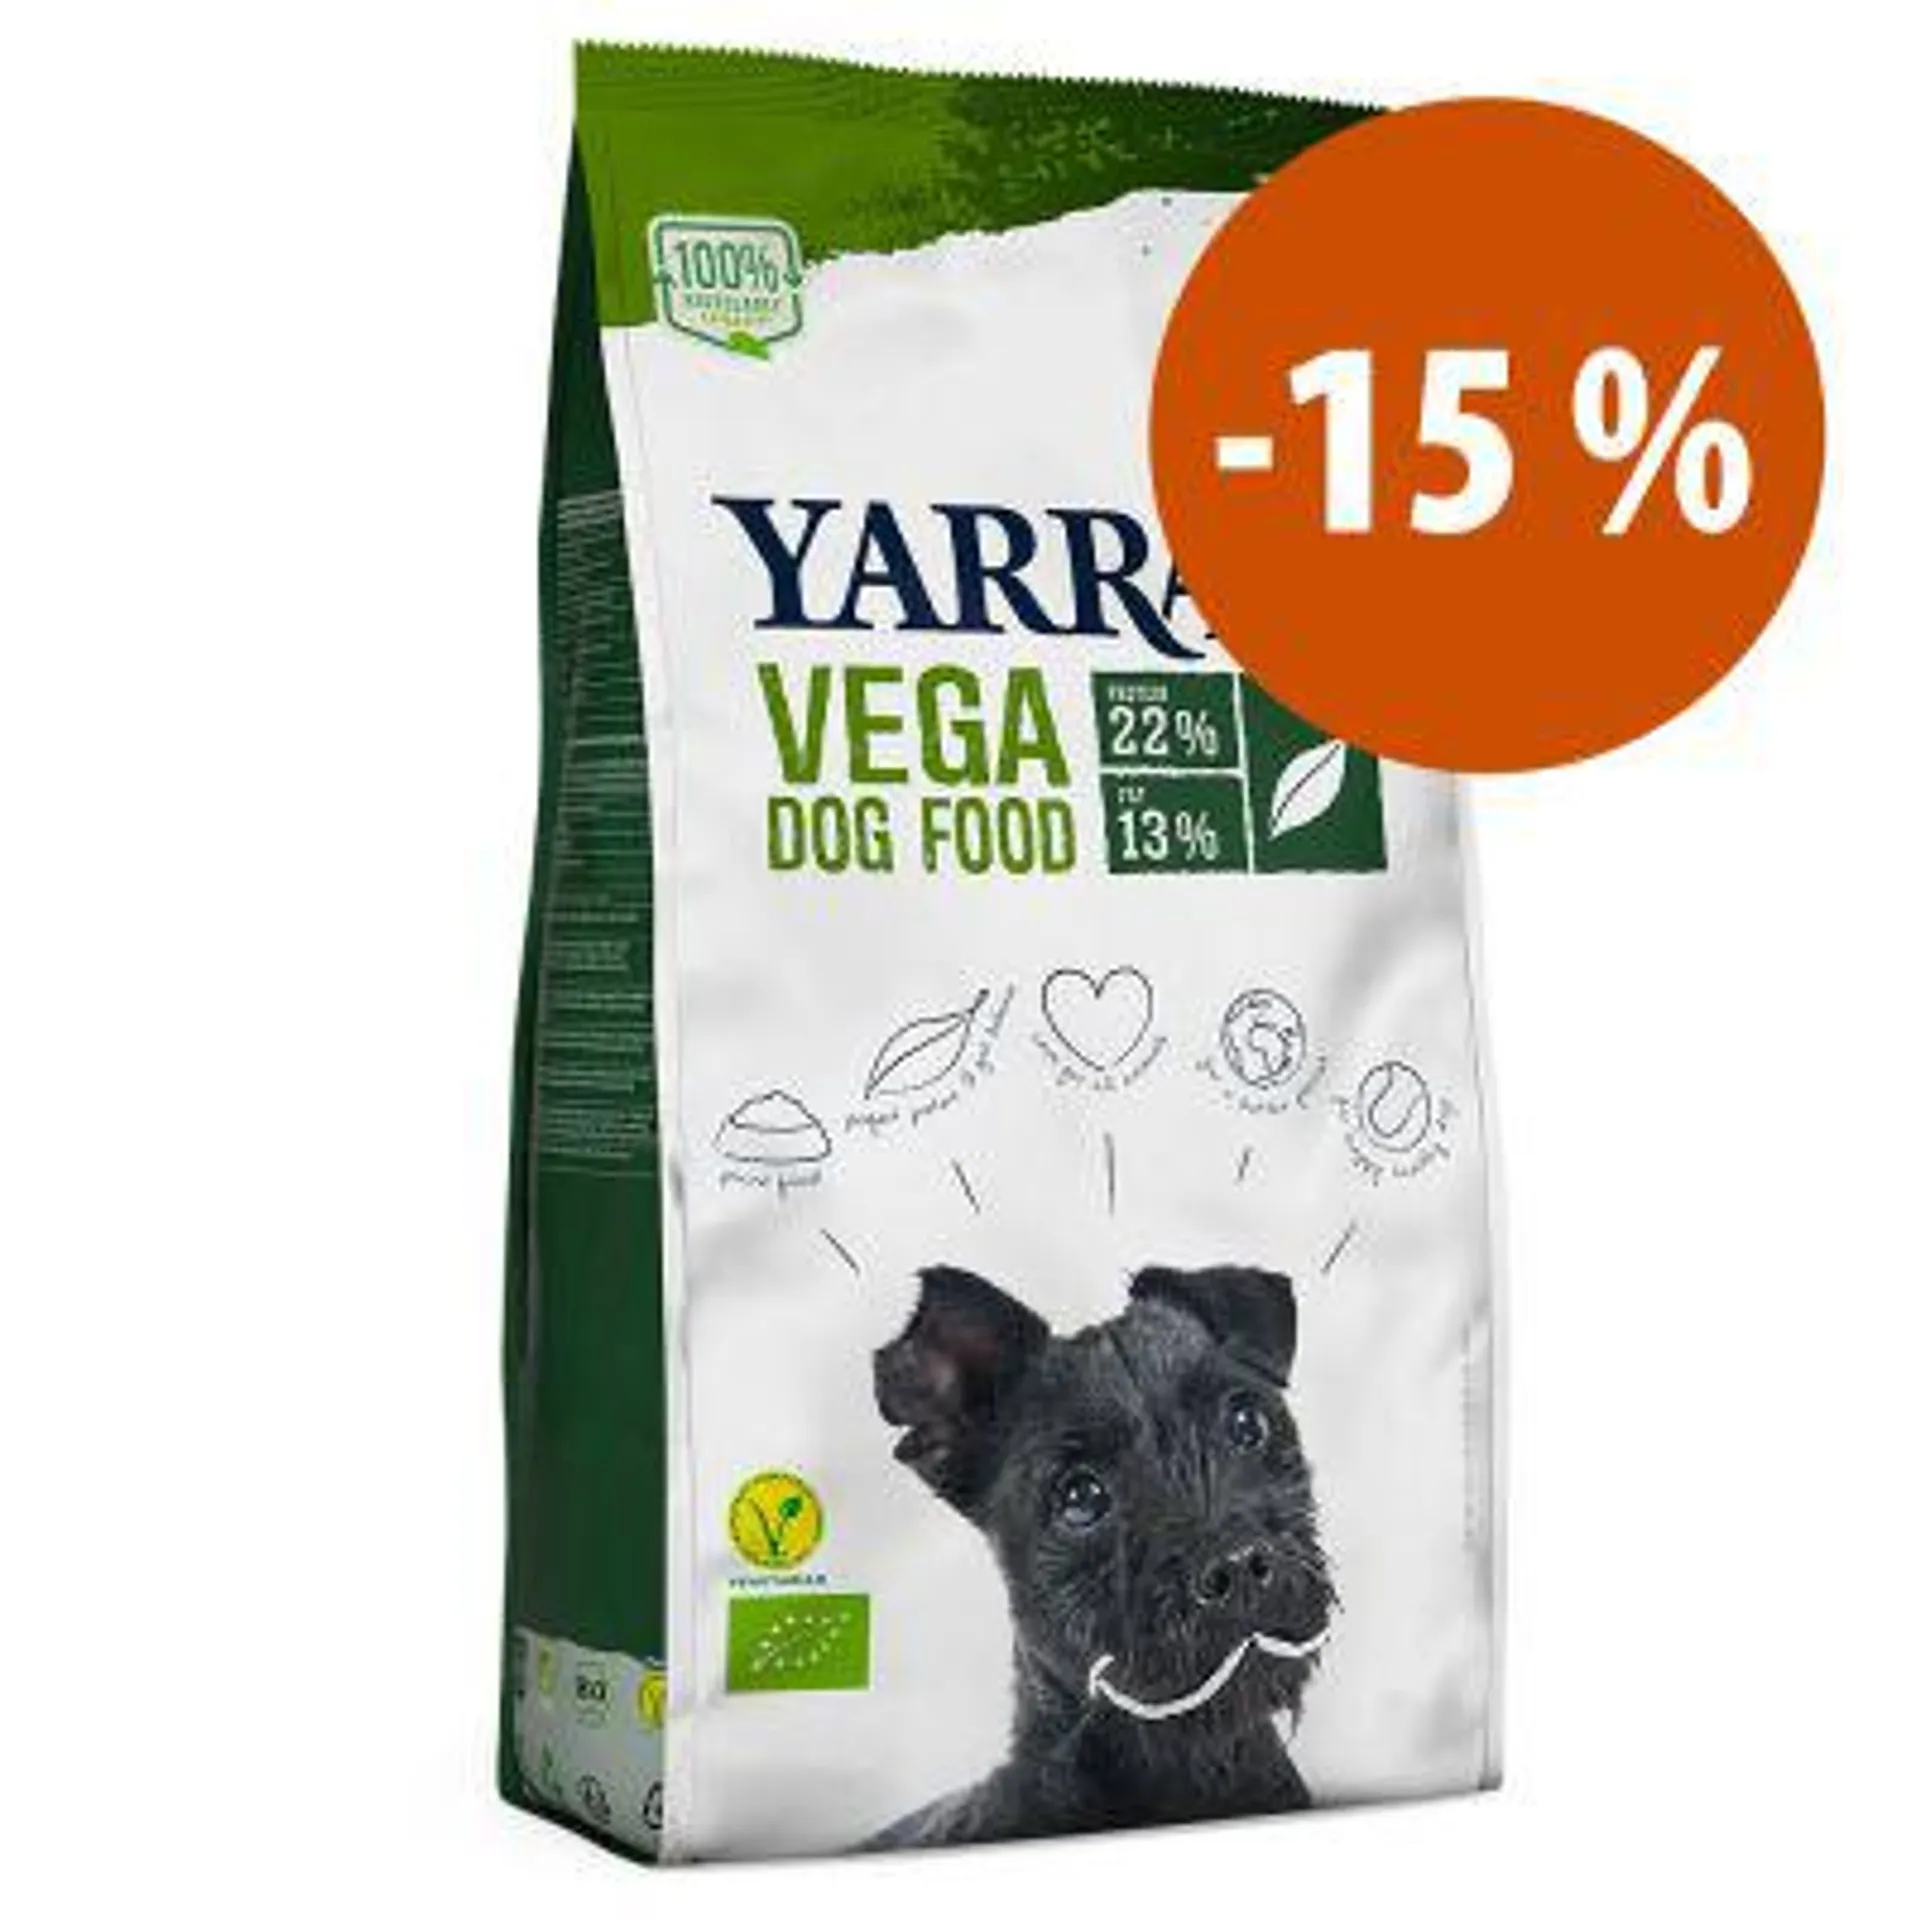 Yarrah de 5 kg a 15 kg ração biológica para cães: 15 % de desconto!